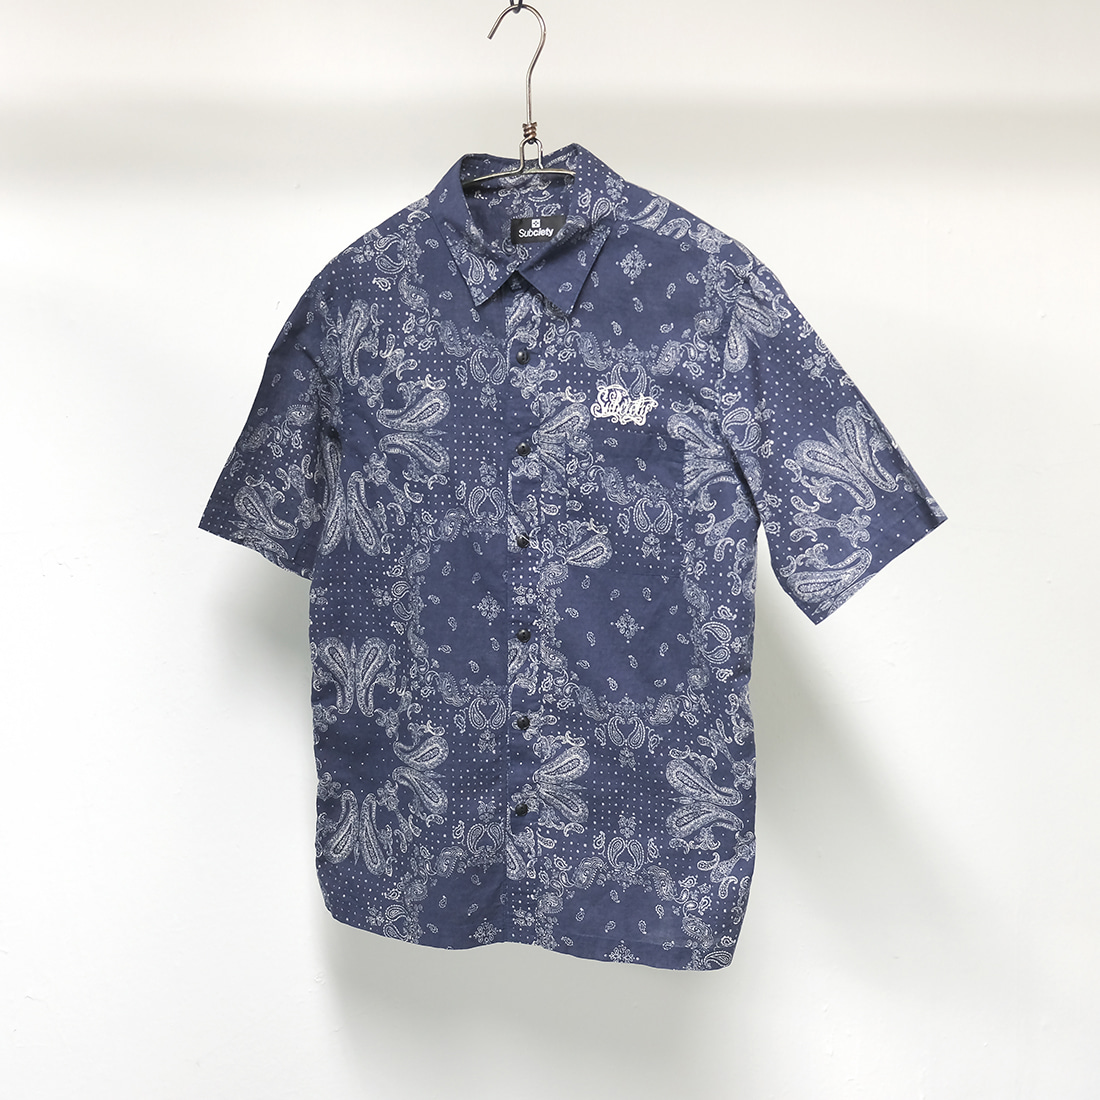 서브사이어티 / Made in japan  Subciety bandana pattern shirt